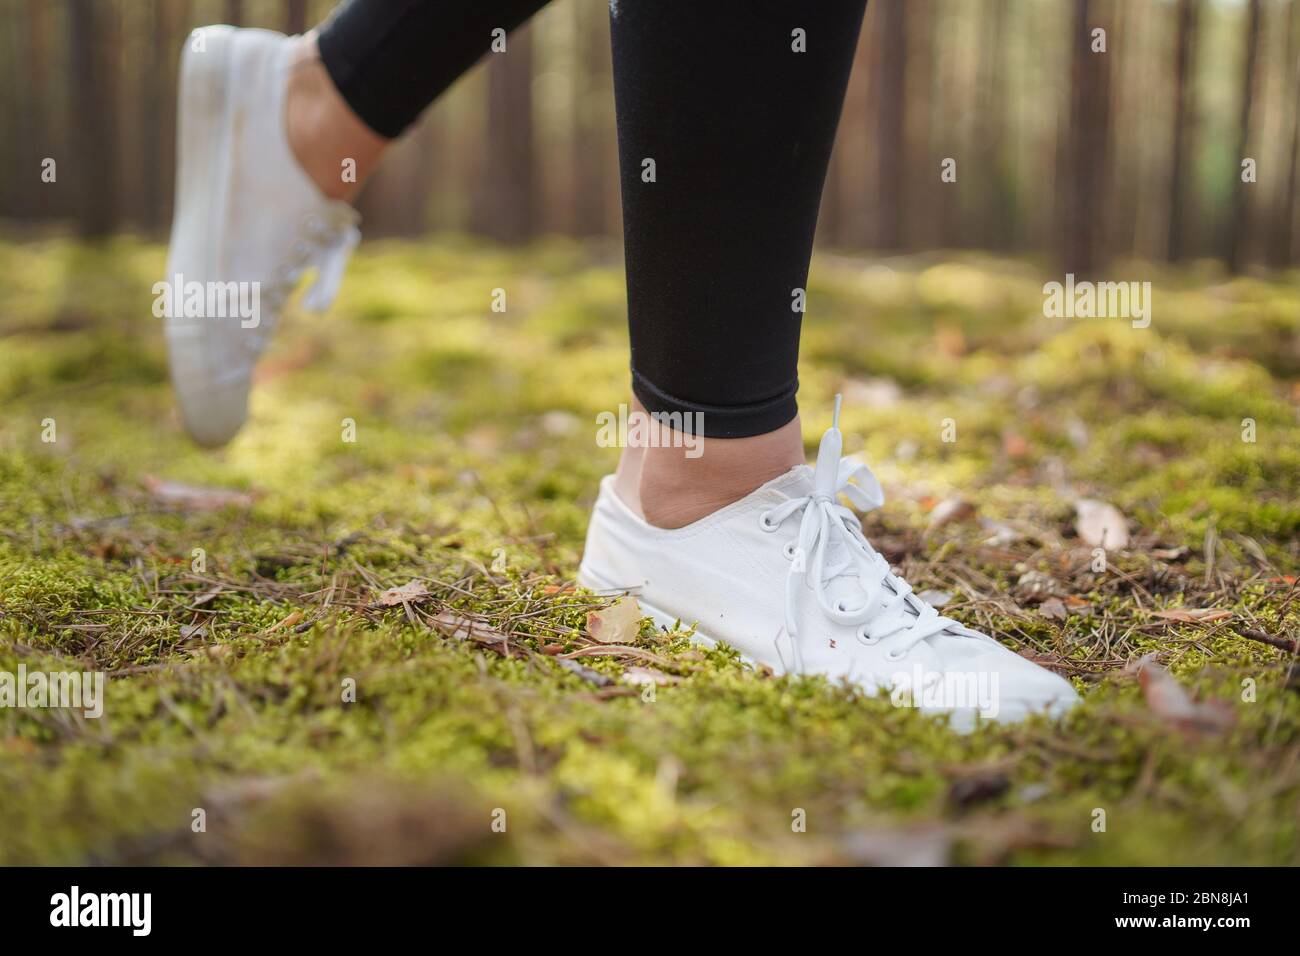 Pieds de coureur en train de courir sur route à proximité sur la chaussure.  Jogging sur un sentier dans une forêt de pins. Femme en train de courir.  Baskets blanches pour femme.